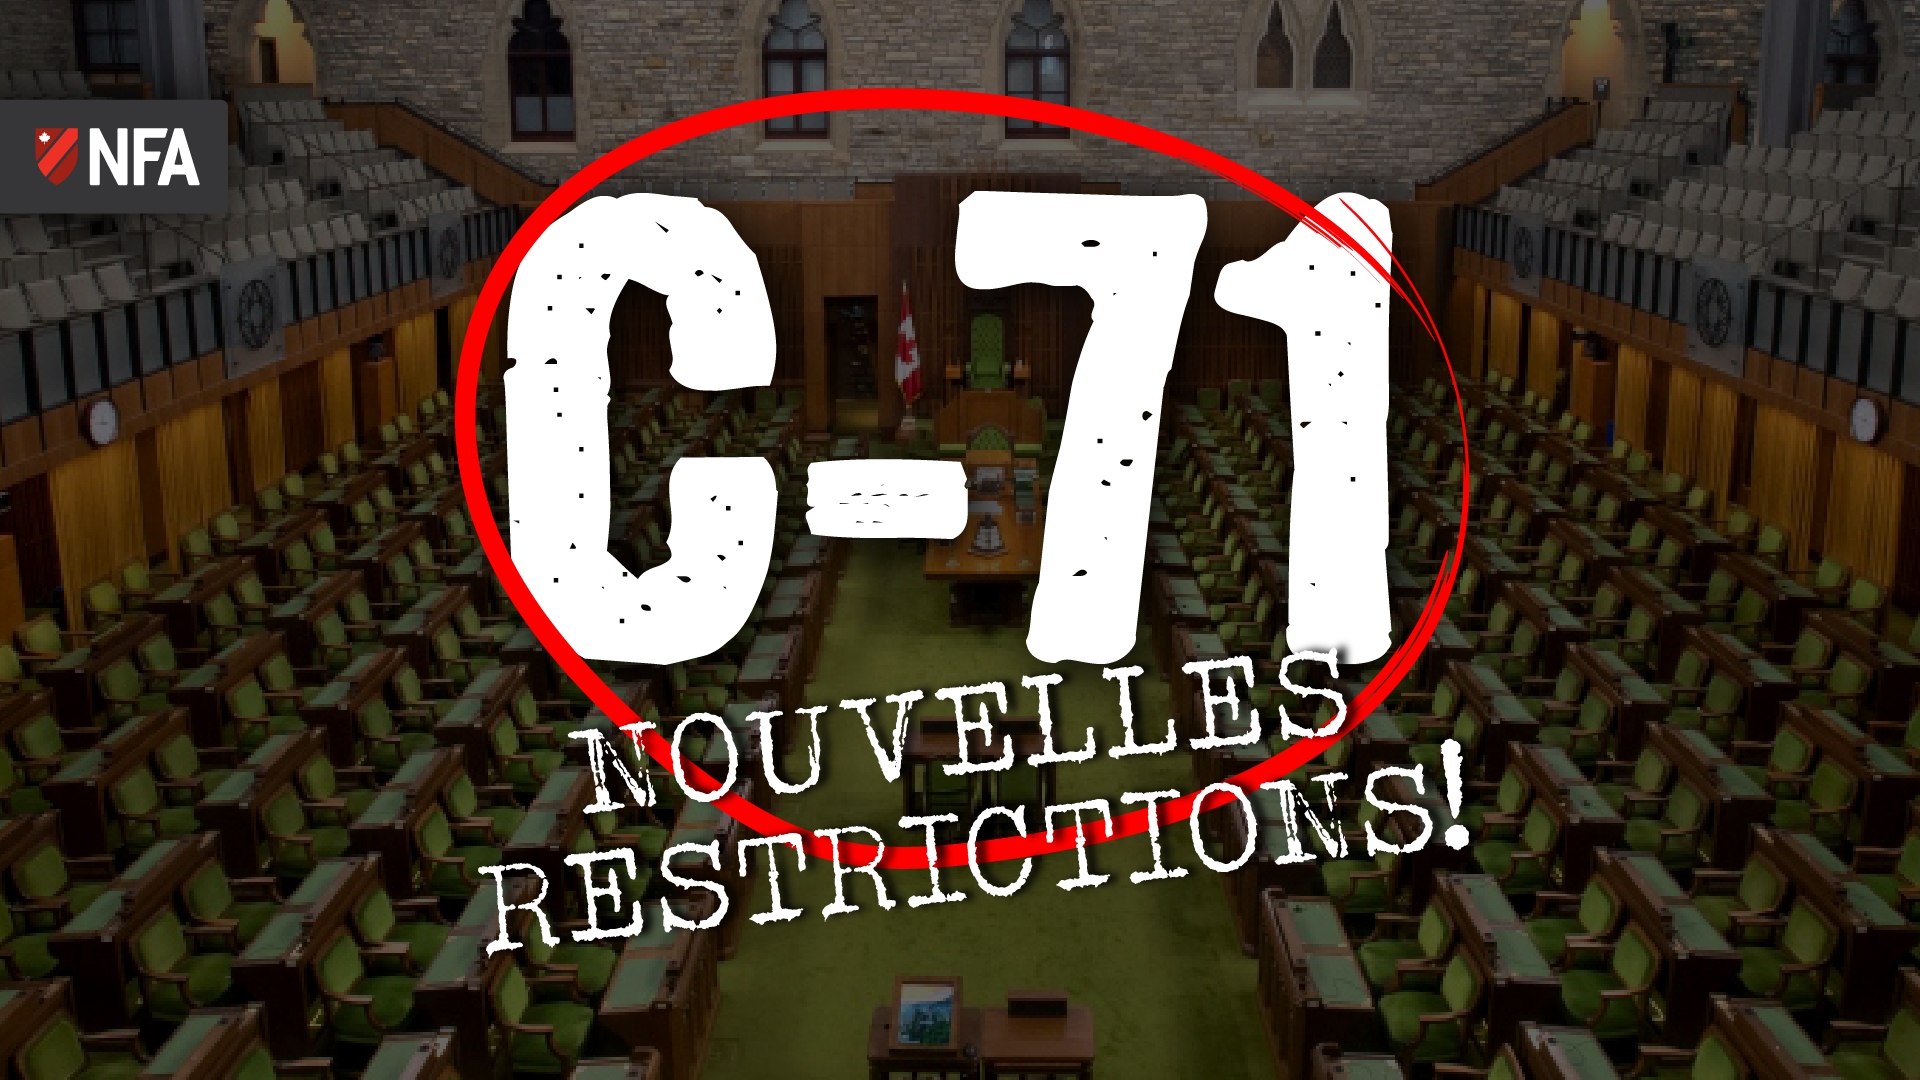 C-71 Nouvelles Restrictions!